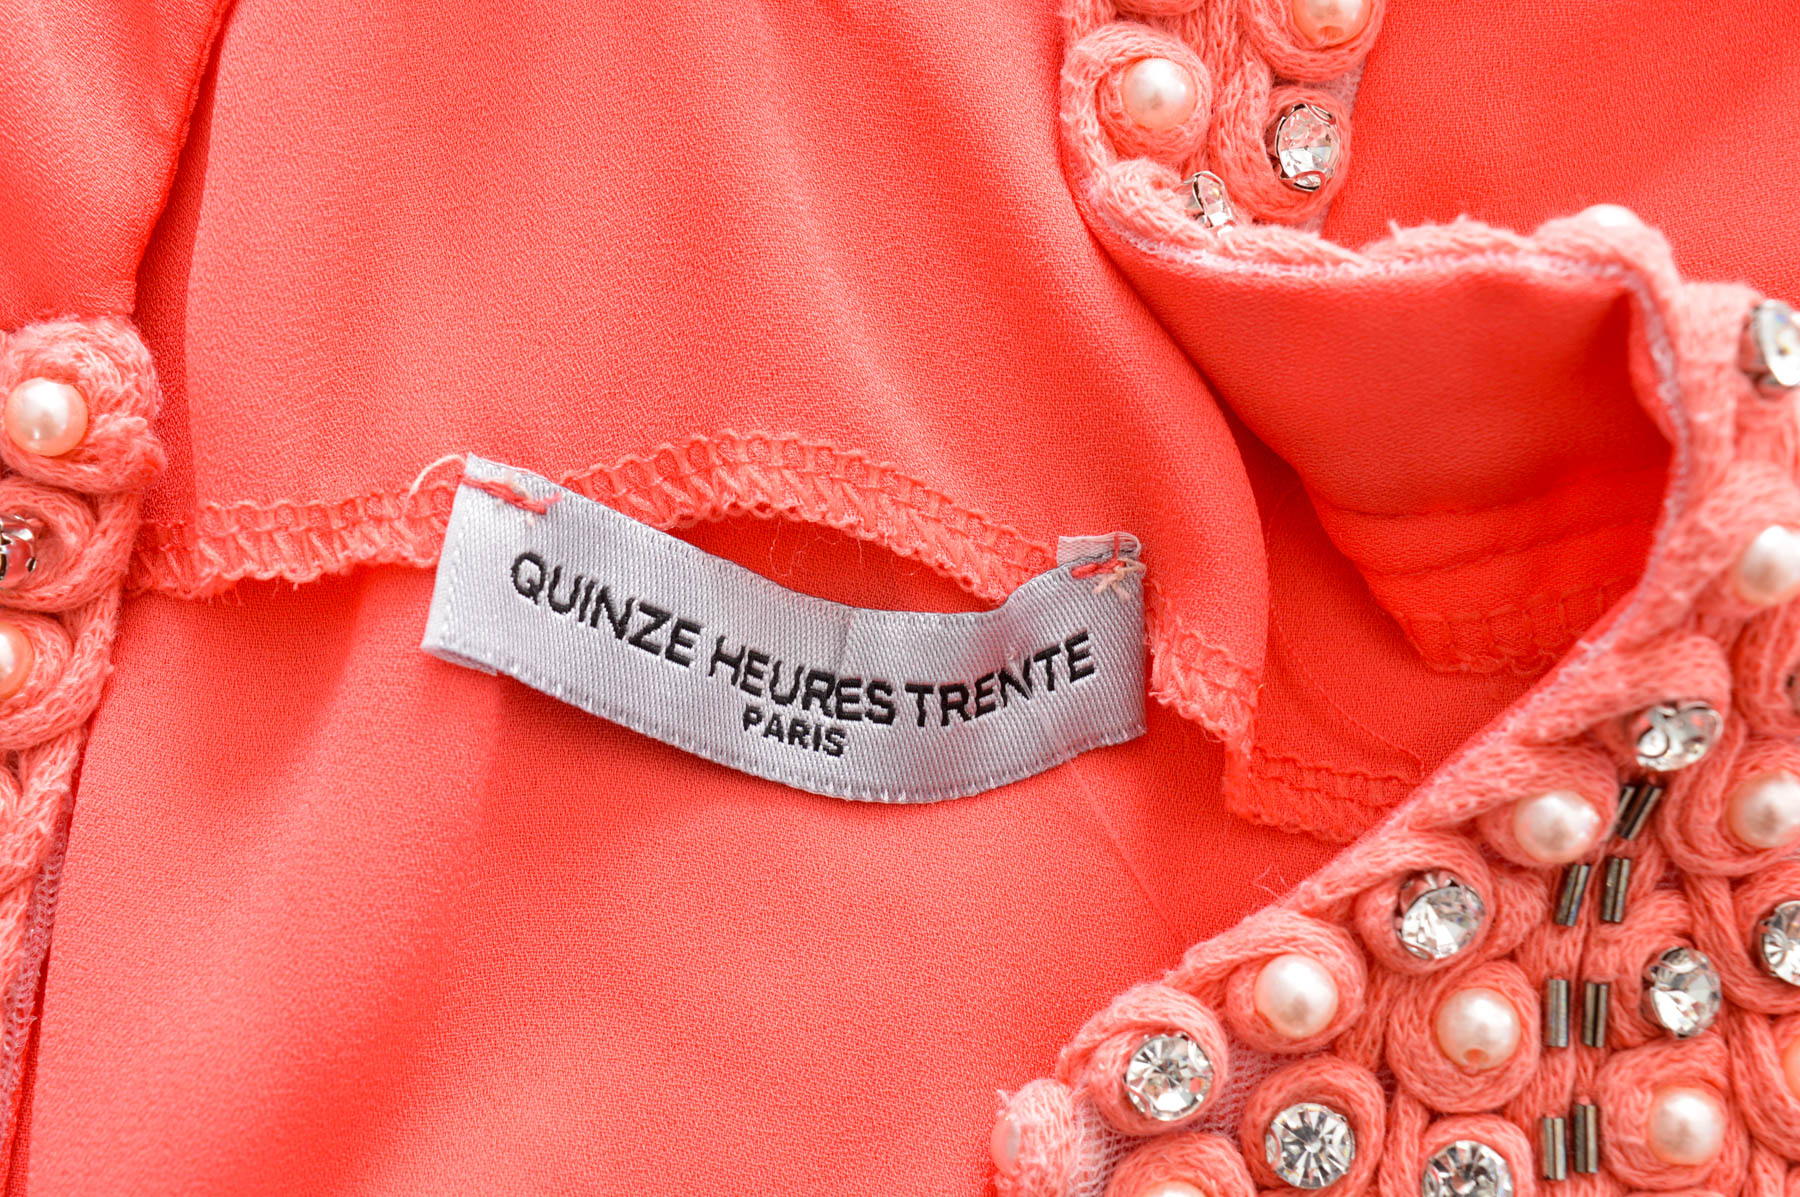 Women's shirt - Quinze Heures Trente - 2